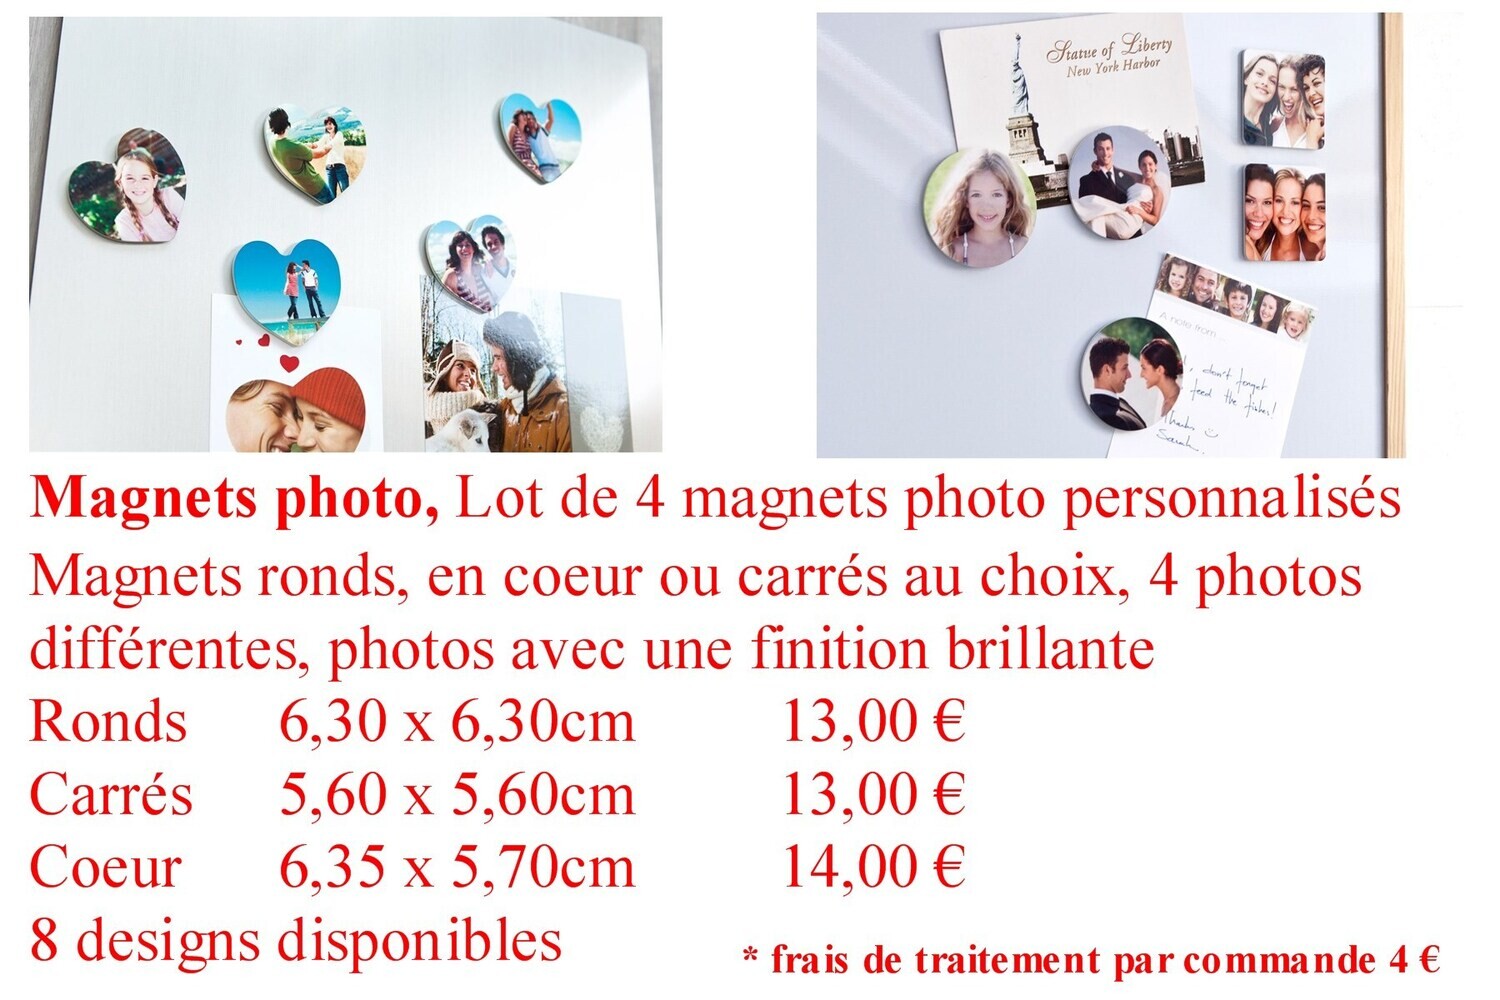 Magnet photos à partir de 17,00 €